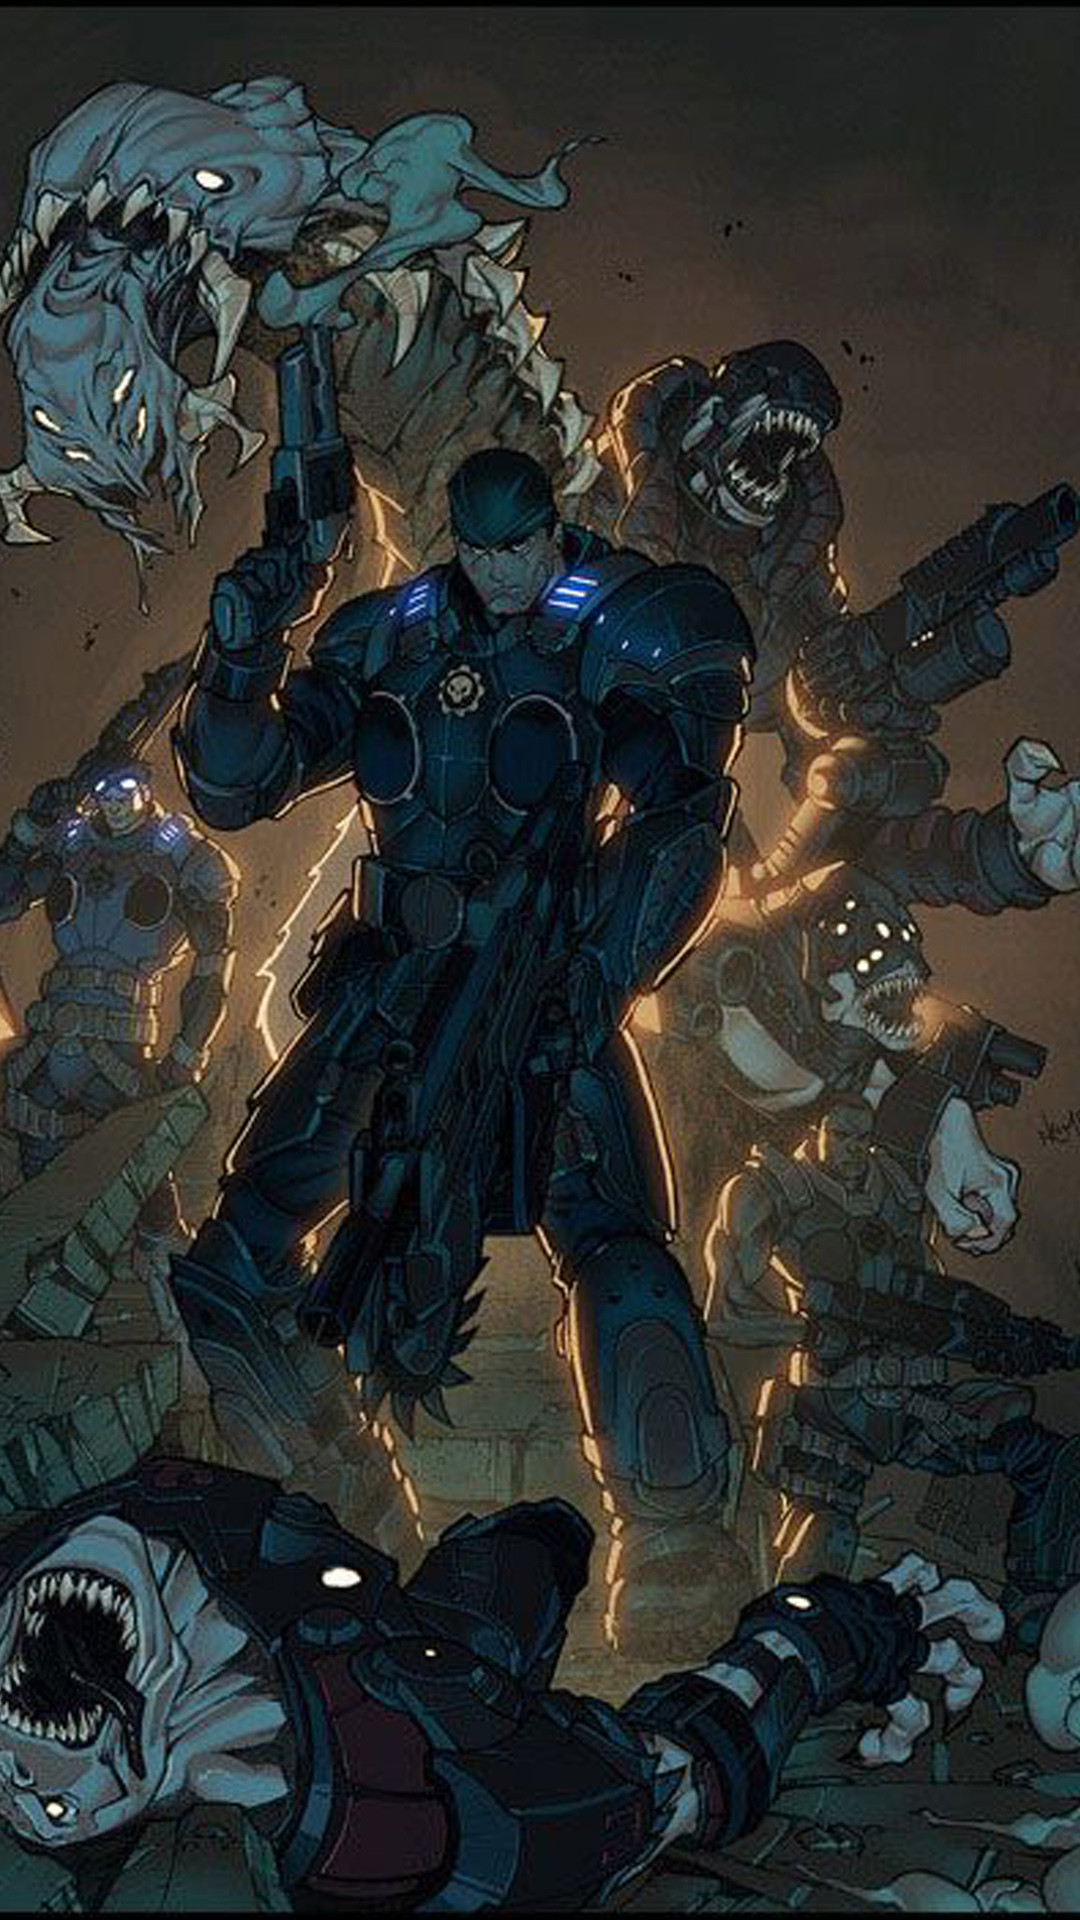 sfondo di gears of war 4,gioco di avventura e azione,personaggio fittizio,cg artwork,illustrazione,supereroe